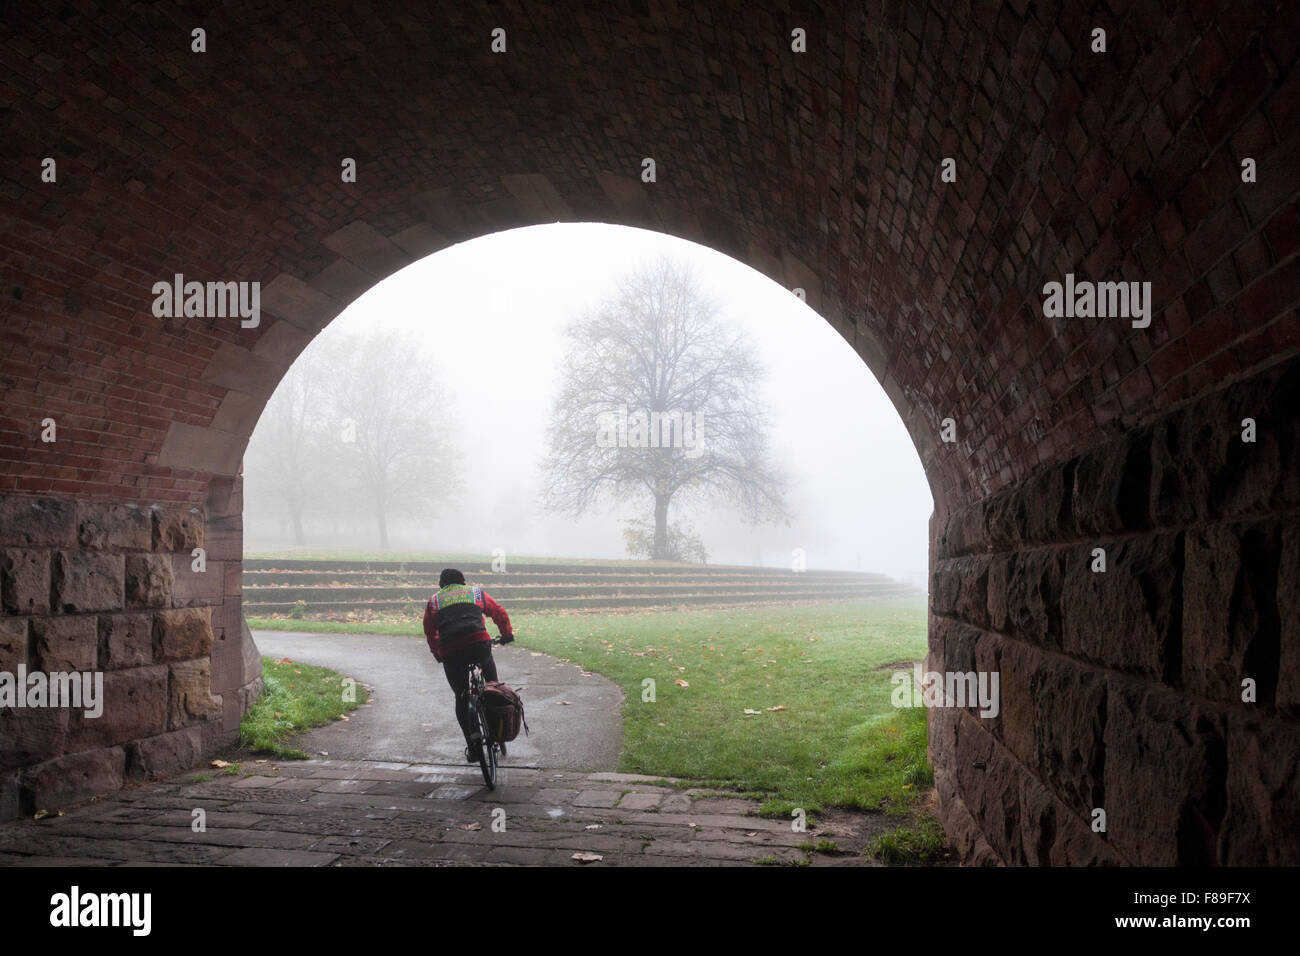 Vélo Cycliste sur une piste cyclable et de sortir de sous l'arche d'un pont sur un jour brumeux en automne, Lancashire, England, UK Banque D'Images